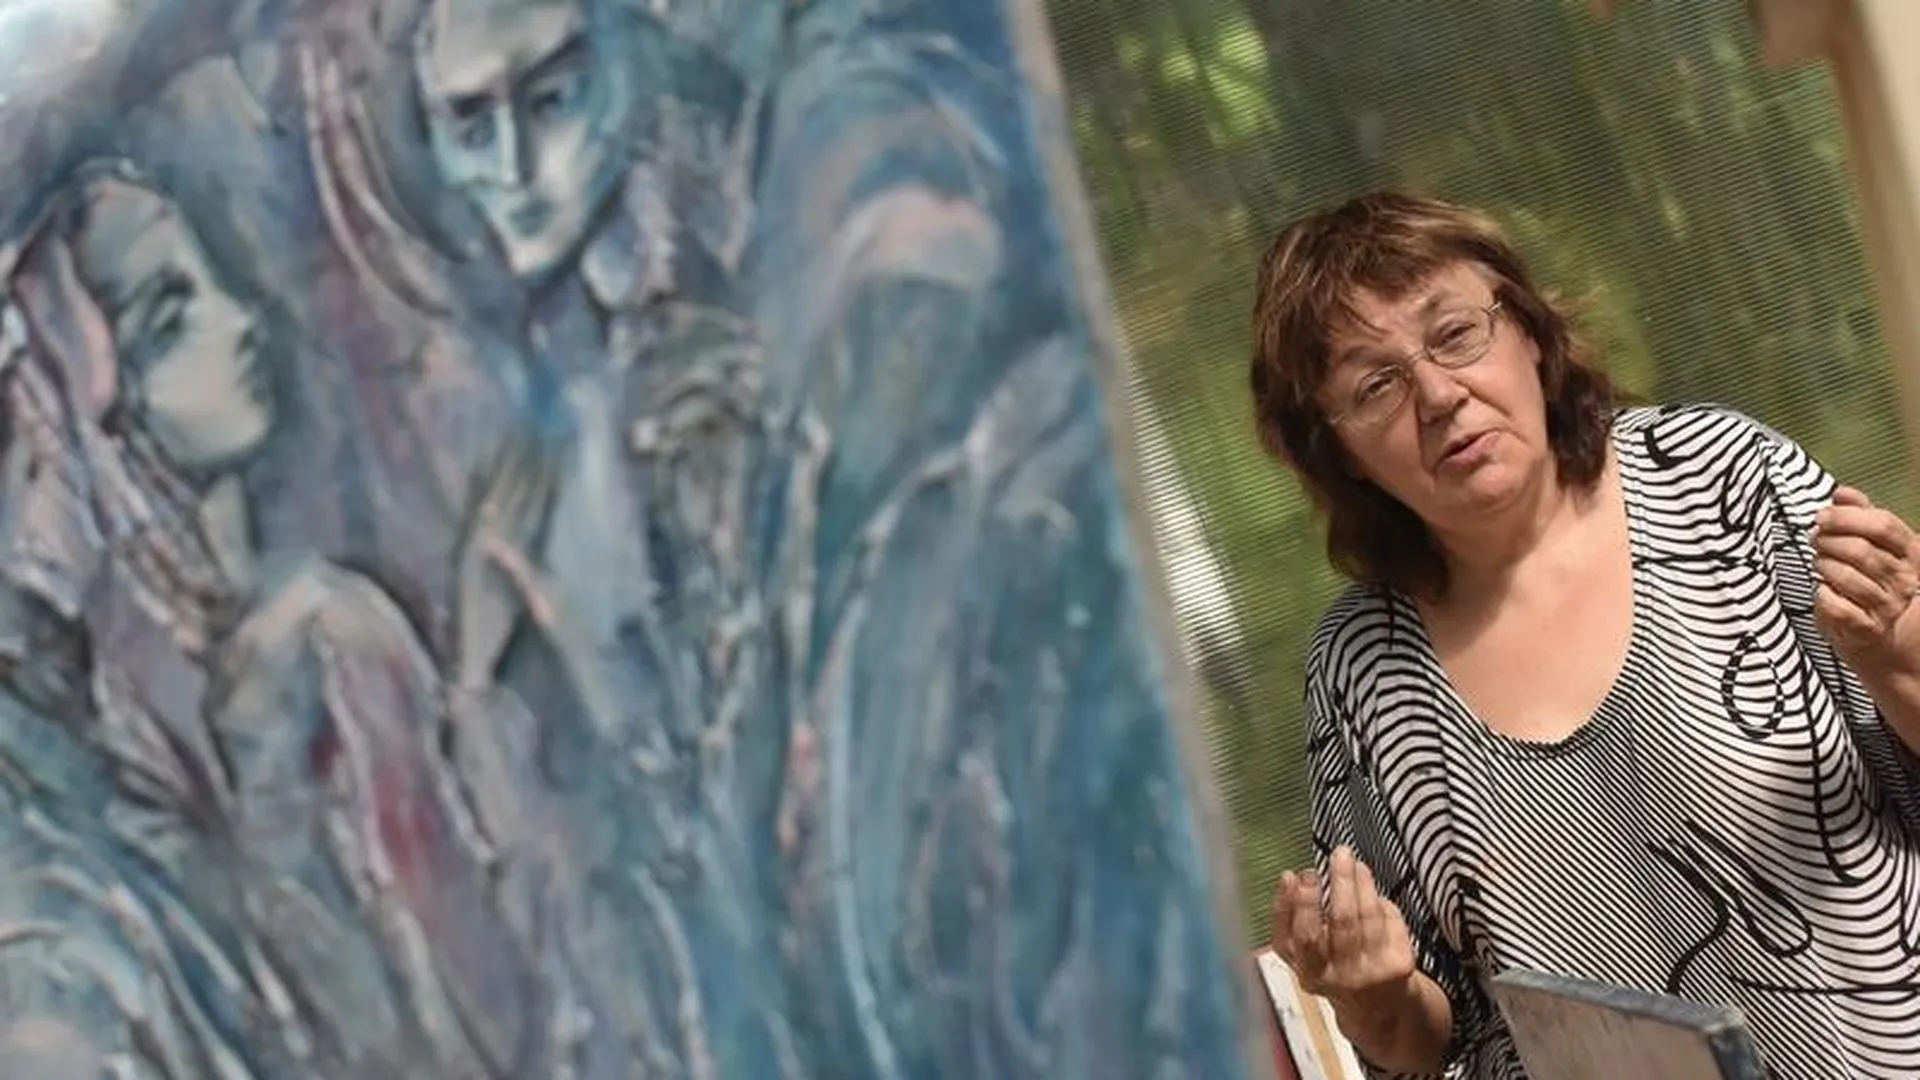 Рисование как терапия: художница из Химок придумала, как обучить любого живописи с нуля